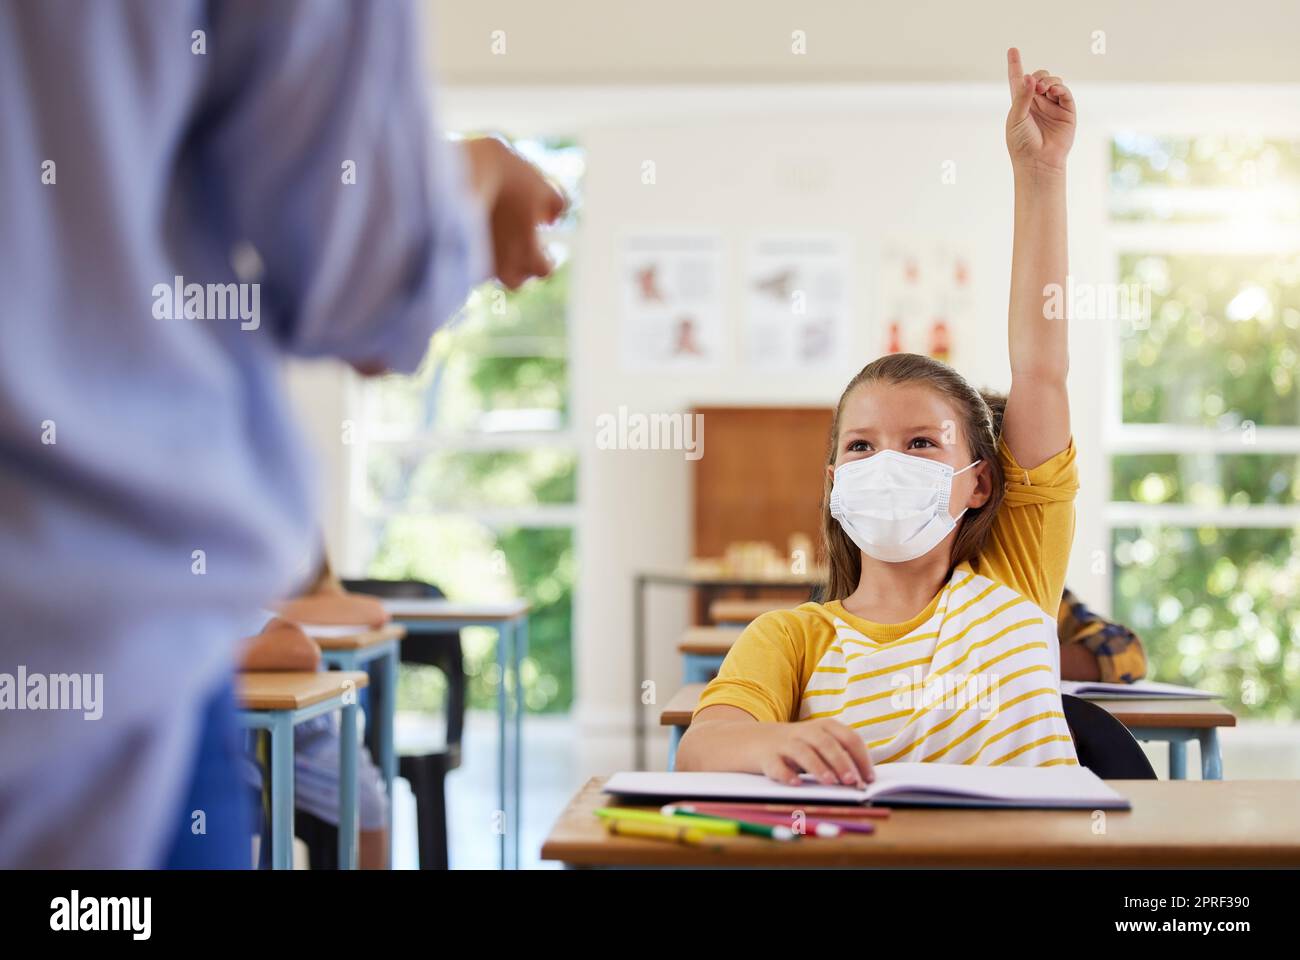 Kluger Schüler mit covid Gesichtsmaske, der Lehrer Frage über Corona-Virus-Pandemie in einem Klassenzimmer oder Grundschule stellen. Kleines Mädchen hebt Hand, um Gesundheitsthemen im Unterricht zu beantworten Stockfoto